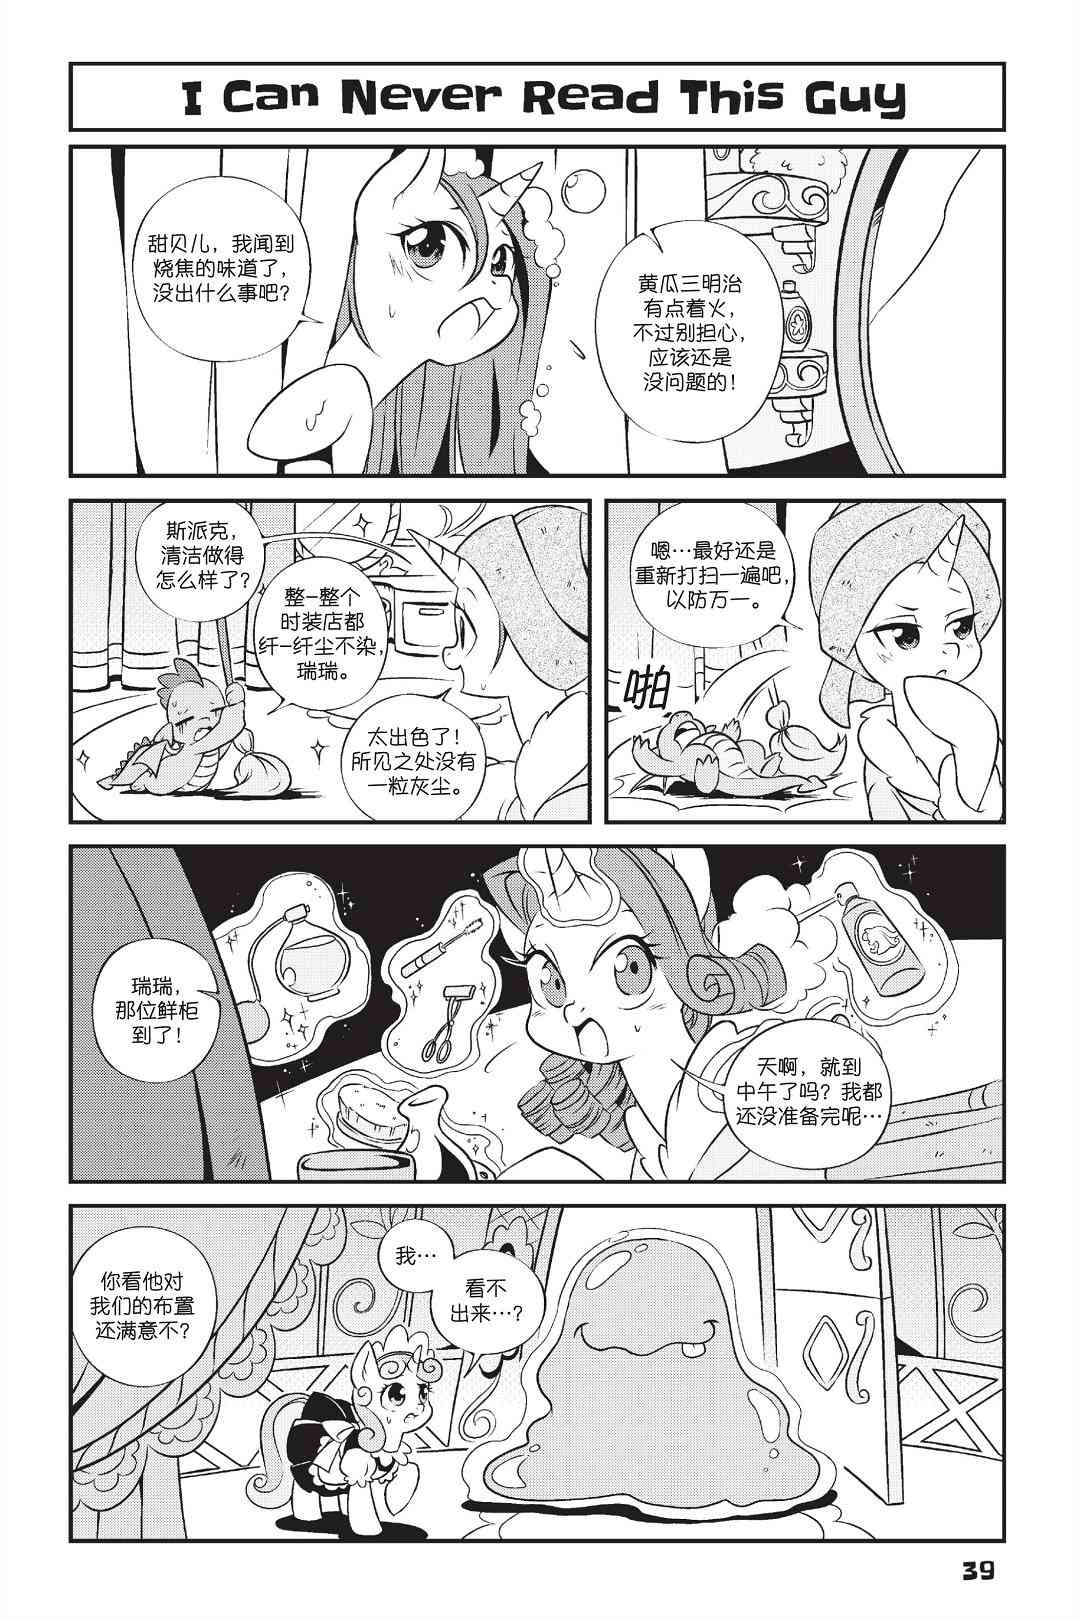 彩虹小馬G4：友情就是魔法 - 新日版漫畫第01部第03話 - 3